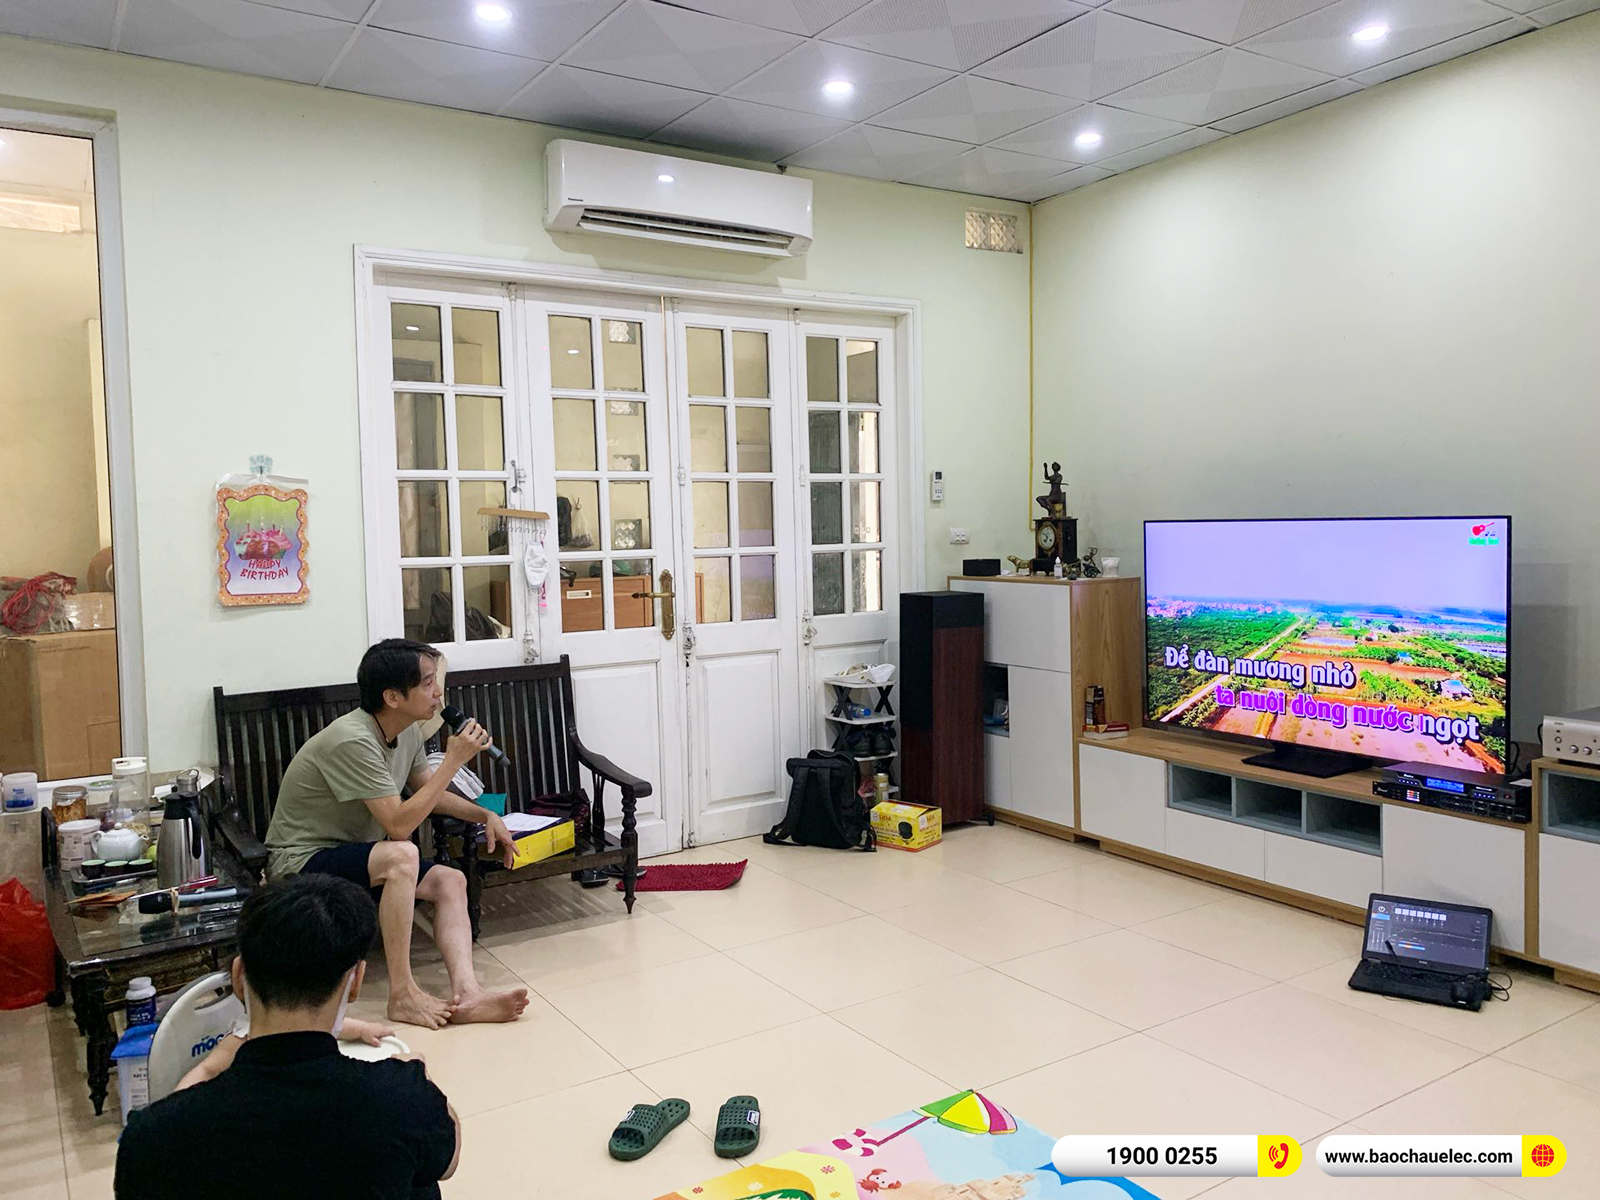 Lắp đặt dàn nghe nhạc, karaoke JBL hơn 20tr cho chú Đoàn ở Hà Nội 